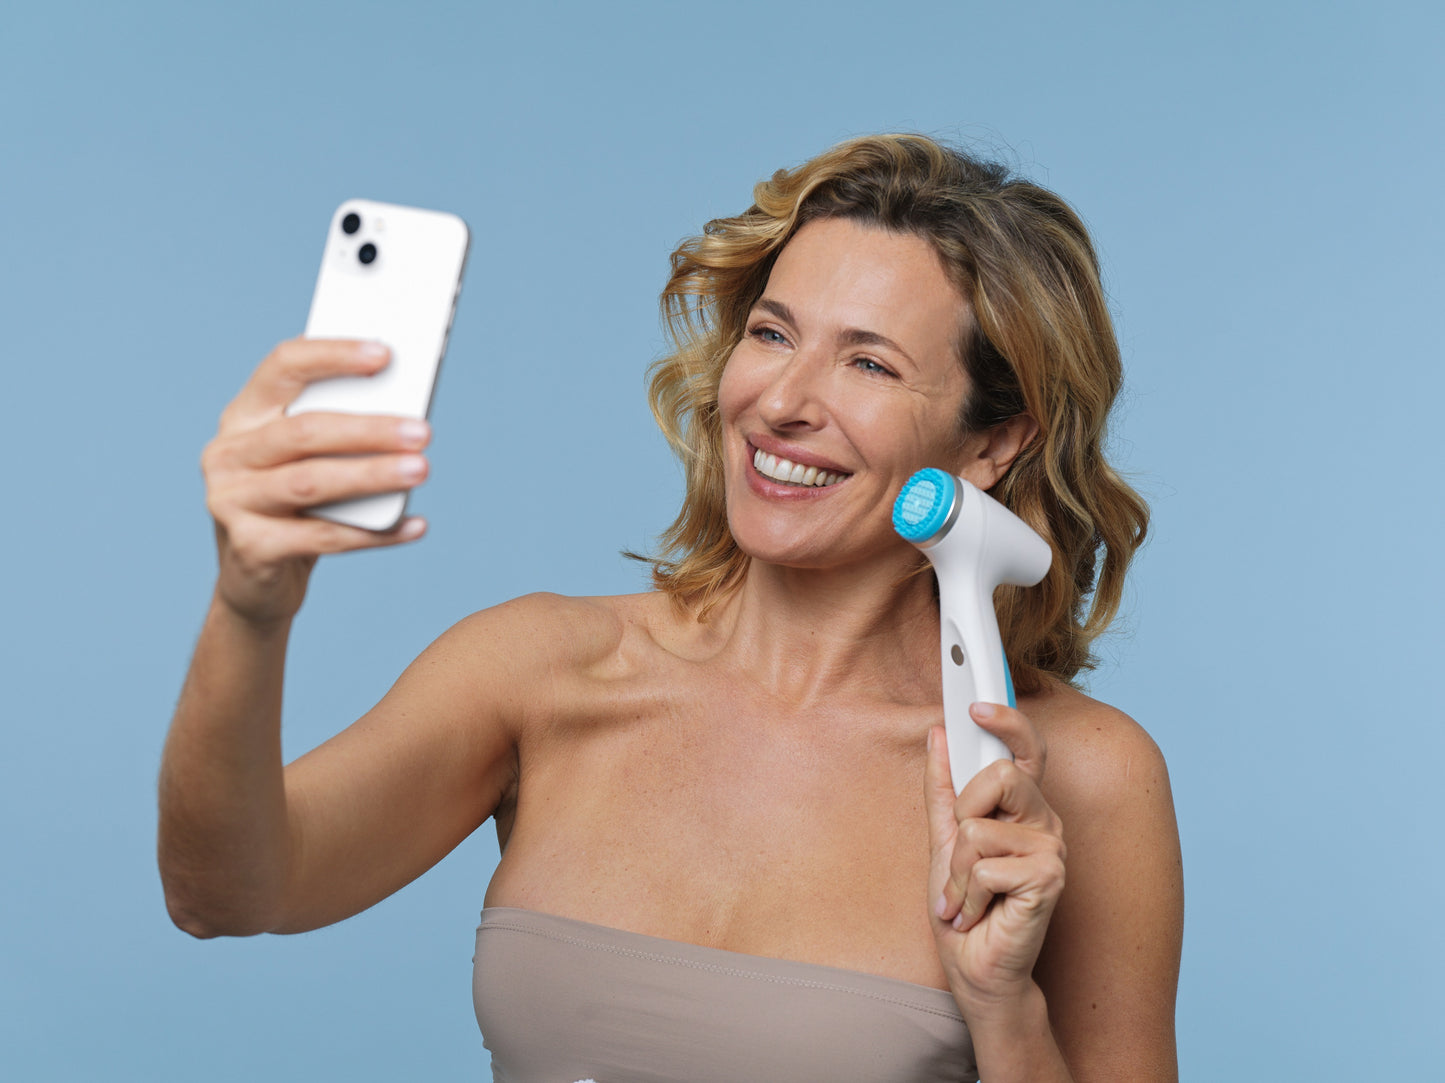 Klant houdt LumiSpa iO en mobiele telefoon vast - LumiSpa iO kan via Blutetooth worden gekoppeld met de Nu Skin Vera app op je mobiele telefoon om je dichter bij je huidverzorgingsdoelen te brengen met intelligente IoT-technologie (Internet of Things).